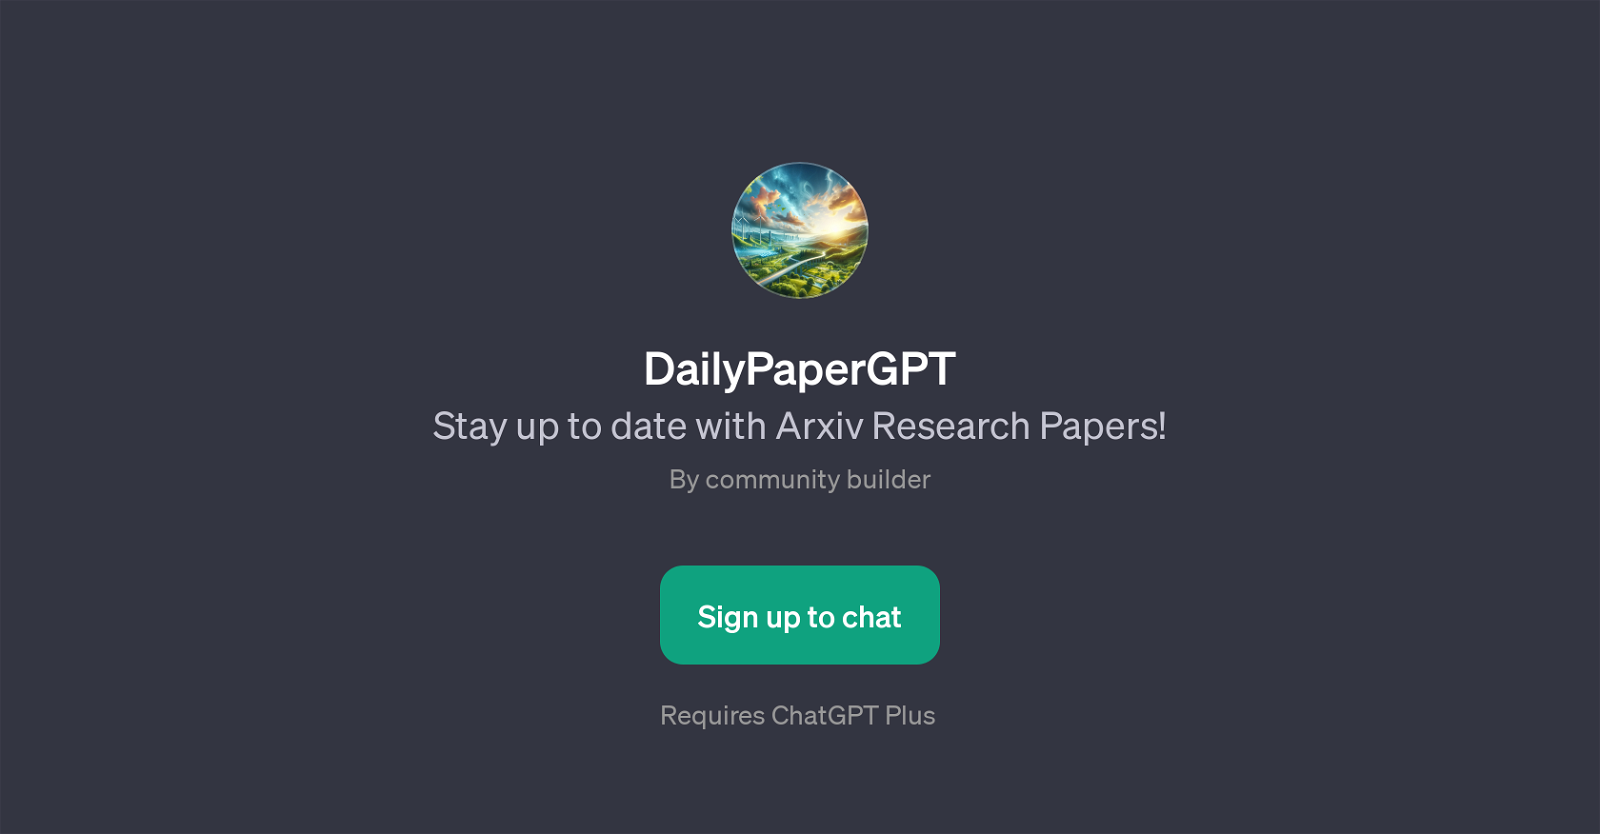 DailyPaperGPT website